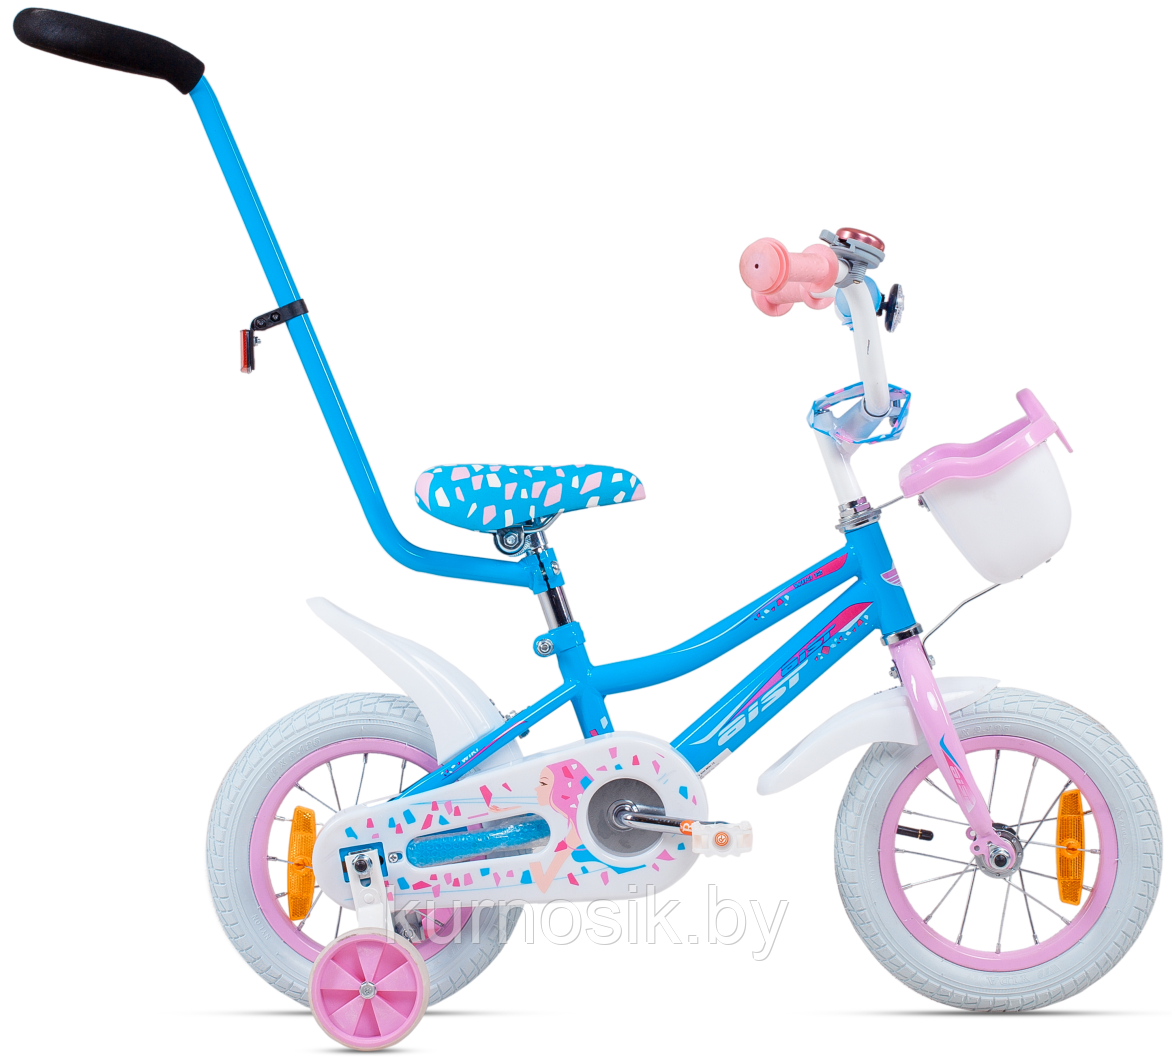 Детский велосипед Aist Wiki 12" голубой c 2 до 4 лет , фото 1